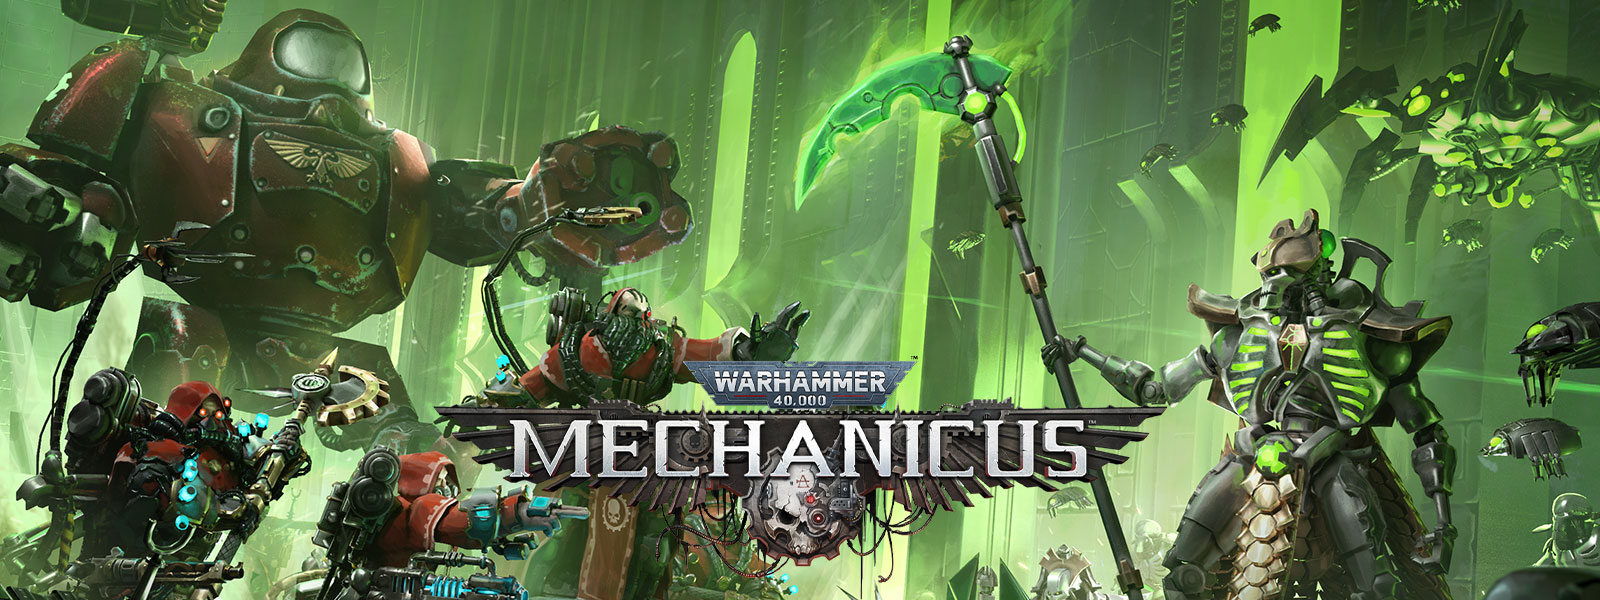 Warhammer 40,000: Mechanicus, Dos ejércitos de alta tecnología se preparan para la batalla.